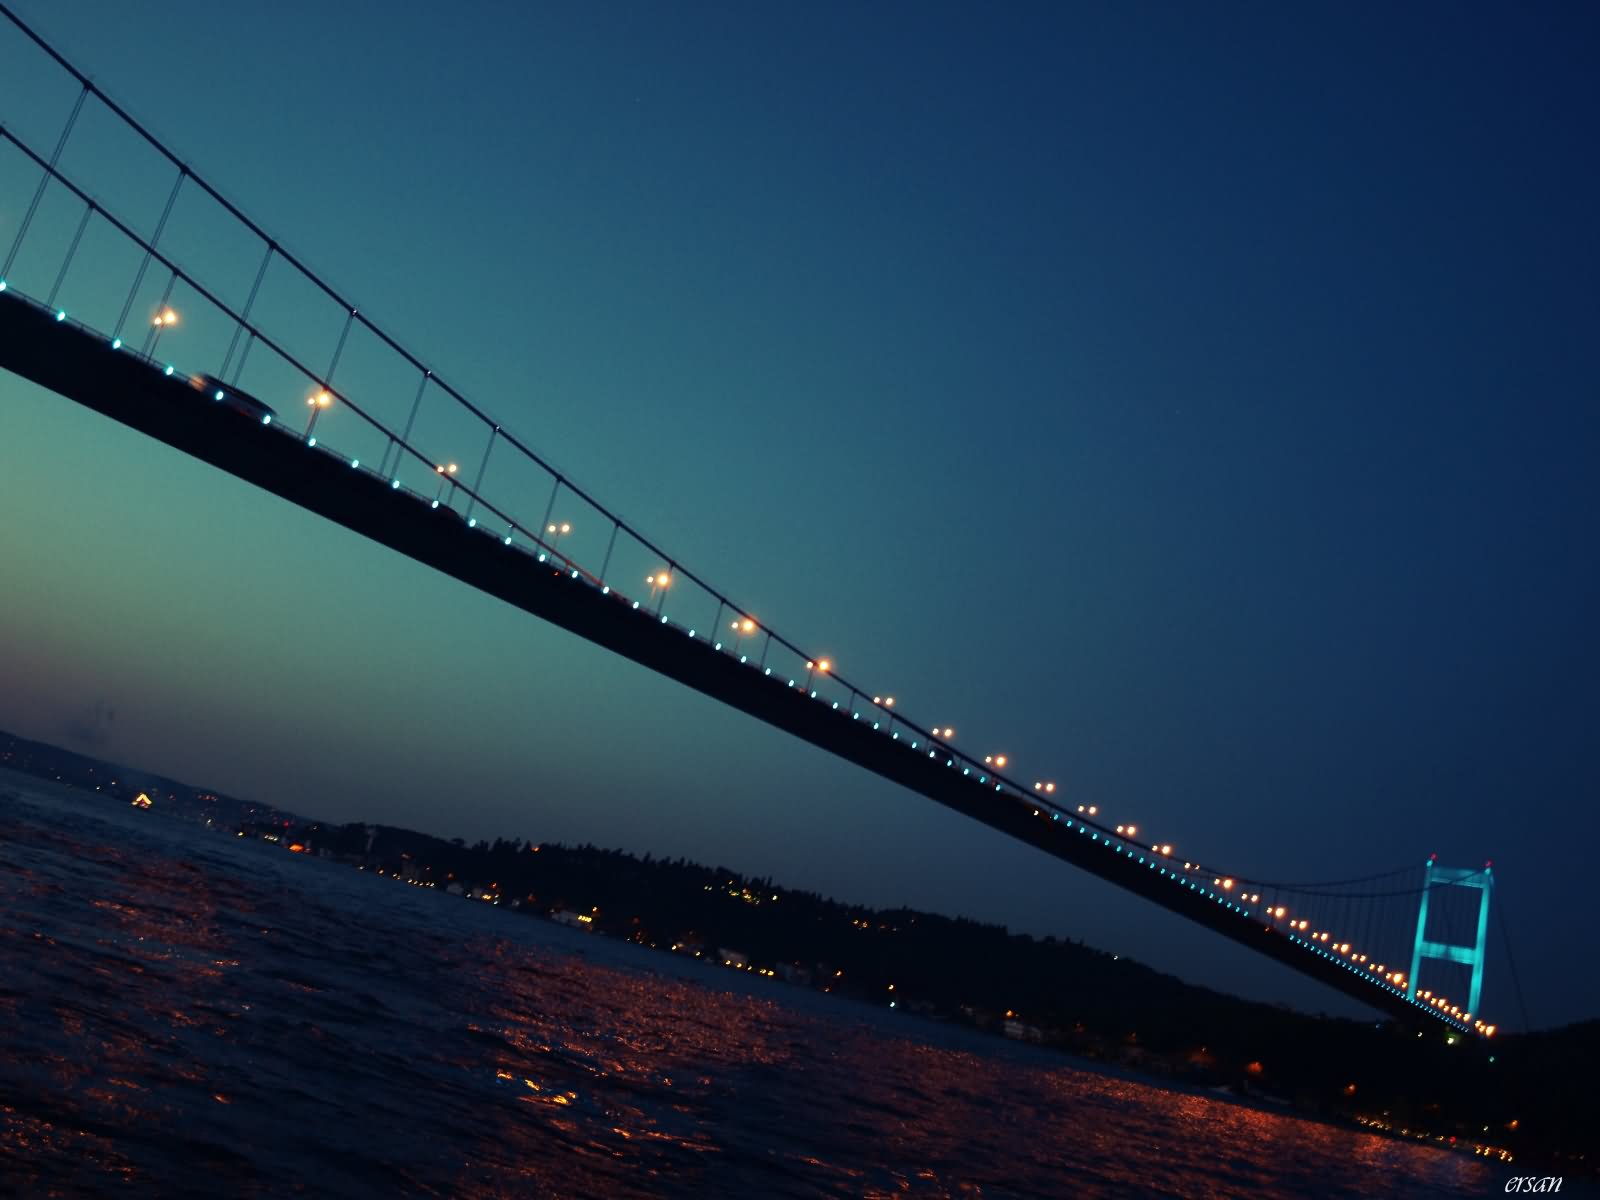 The Bosphorus Bridge At Night Picture